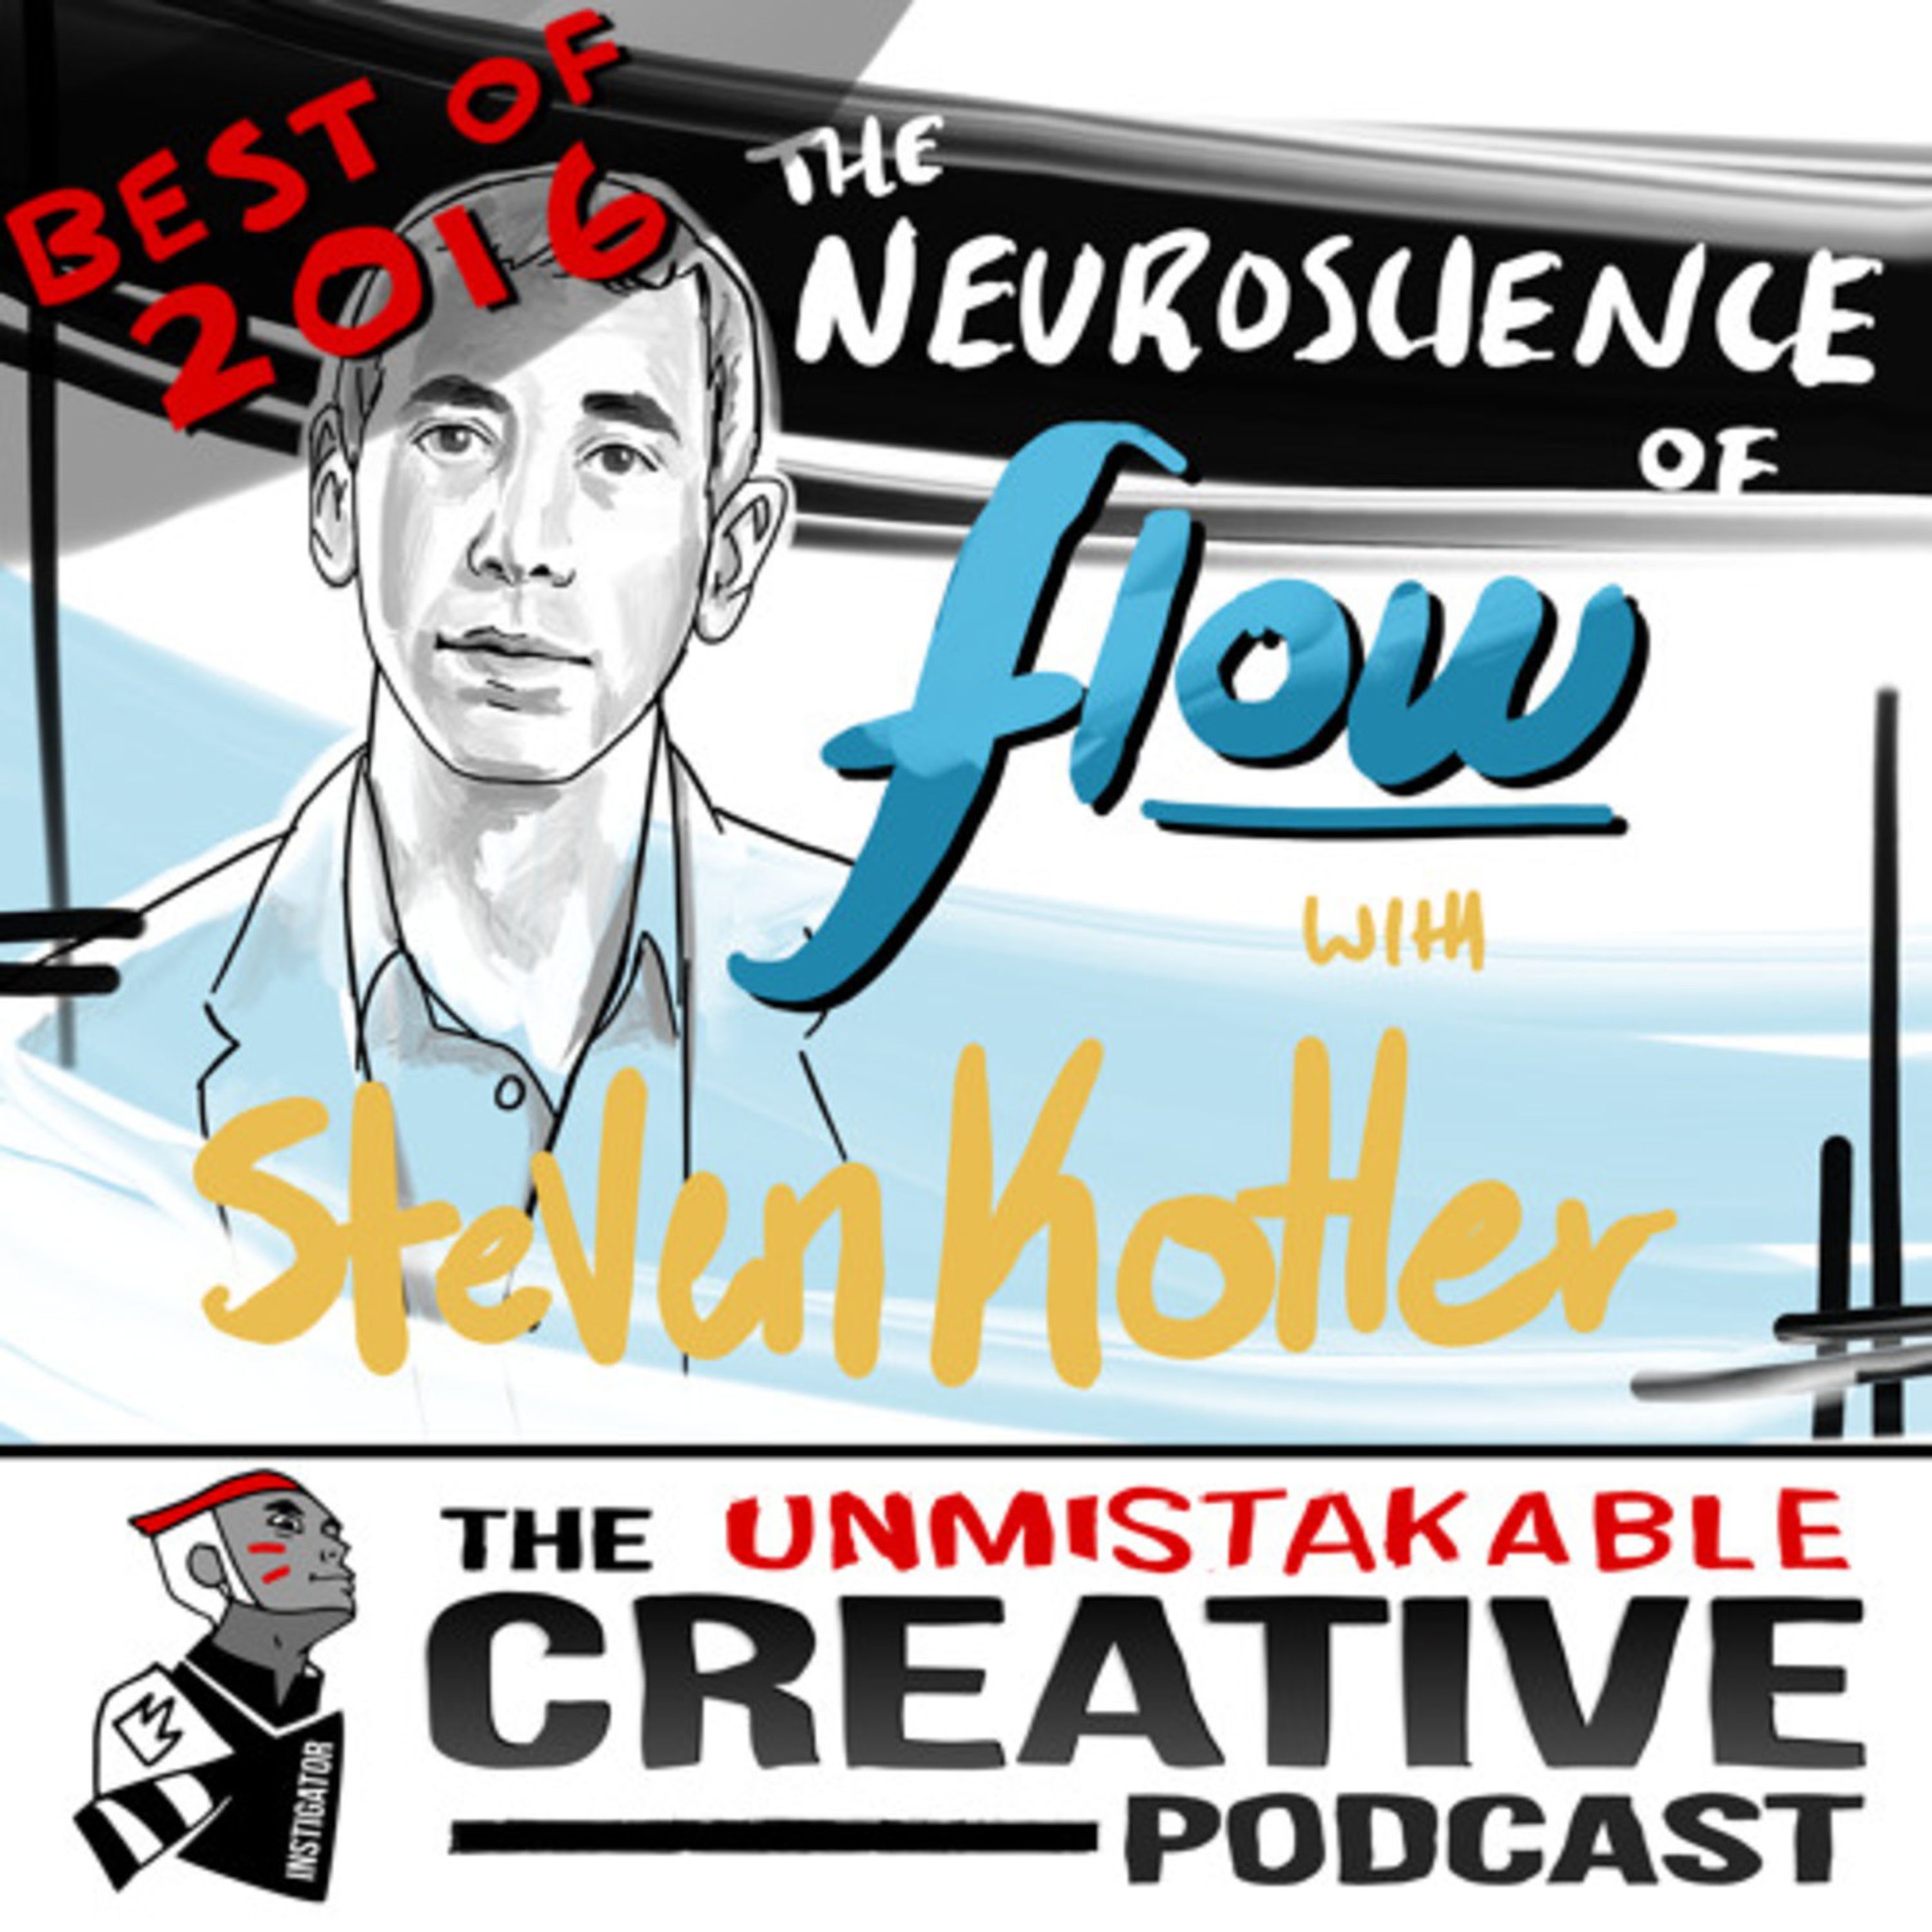 Best of 2016: The Neuroscience of Flow with Steven Kotler